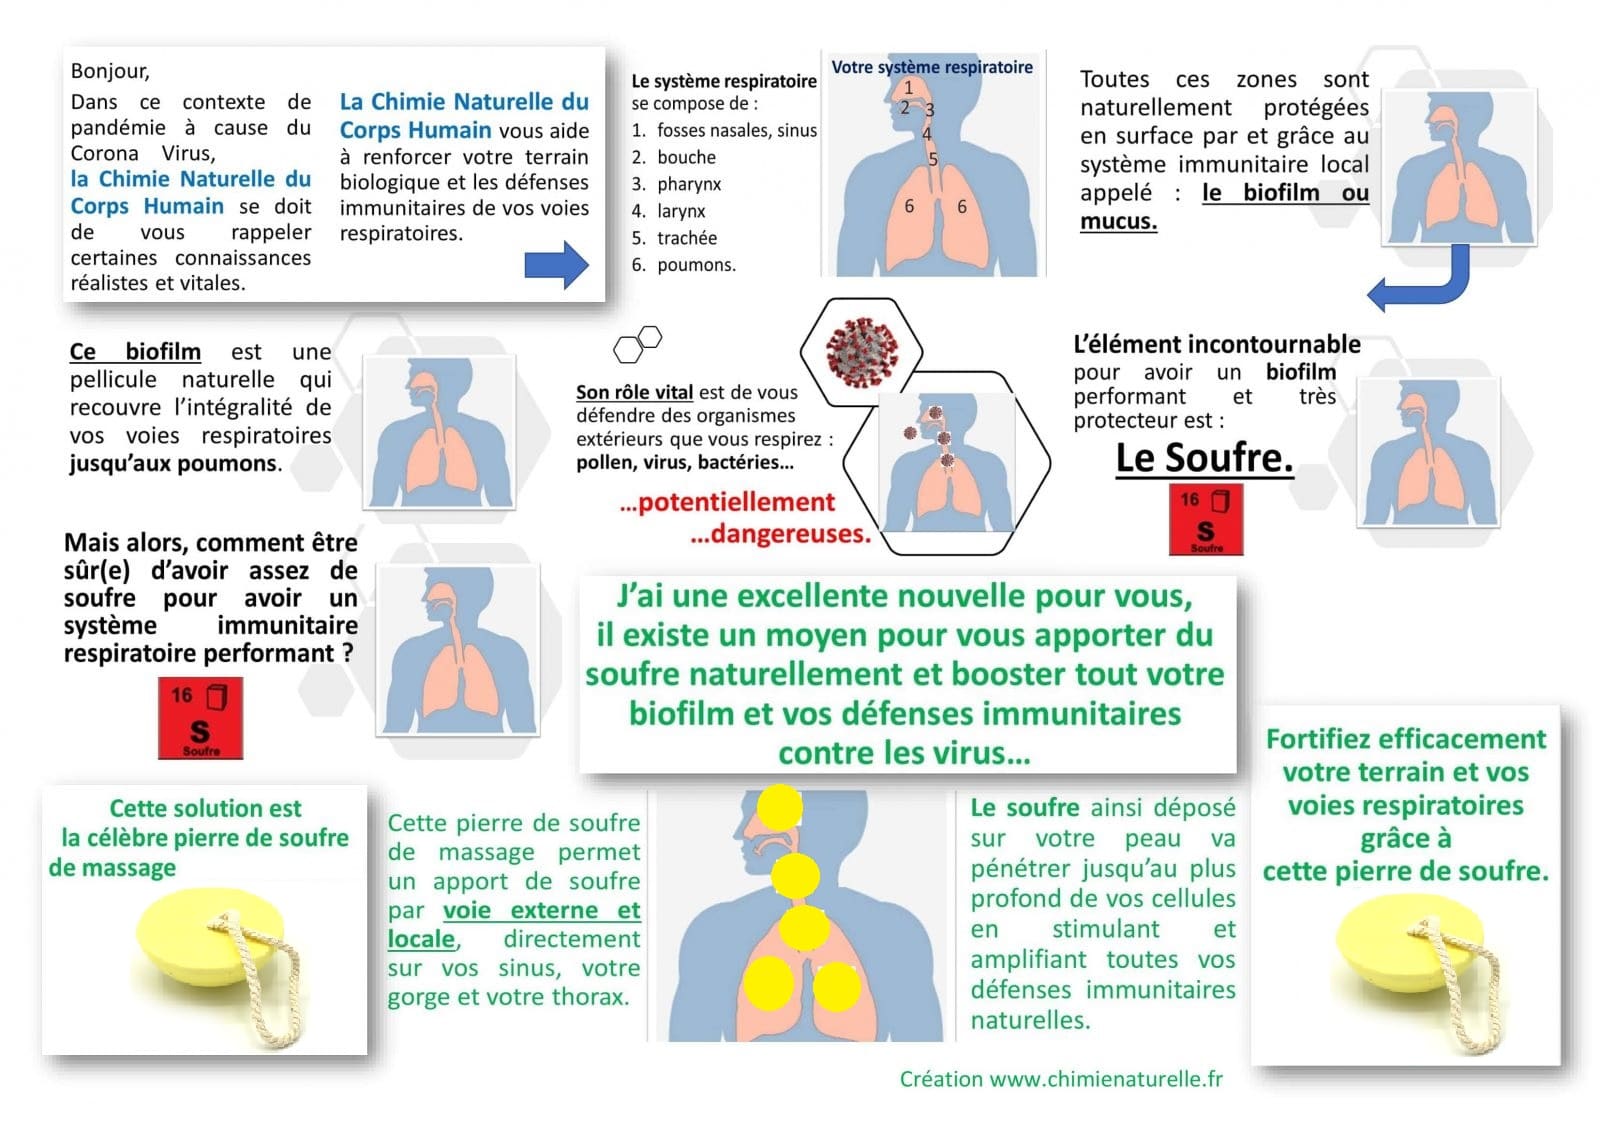 Chimie Naturelle - Poster soufre contre CoronaVirus et Covid19 (renforcement défenses immunitaires des muqueuses respiratoires)